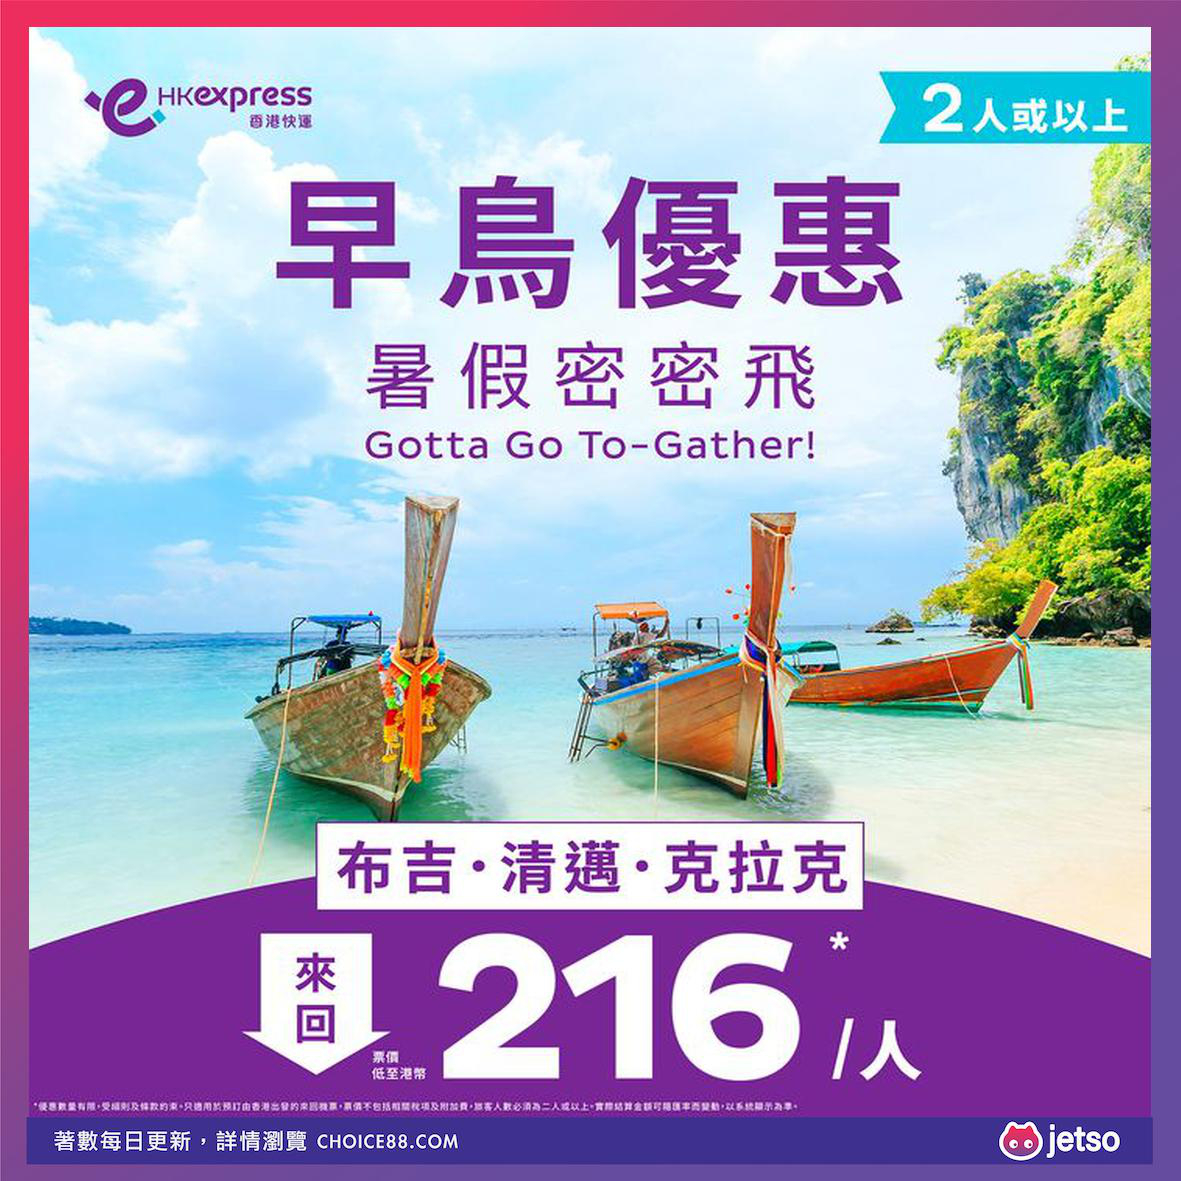 HK Express : [机票优惠]克拉克早鸟优惠